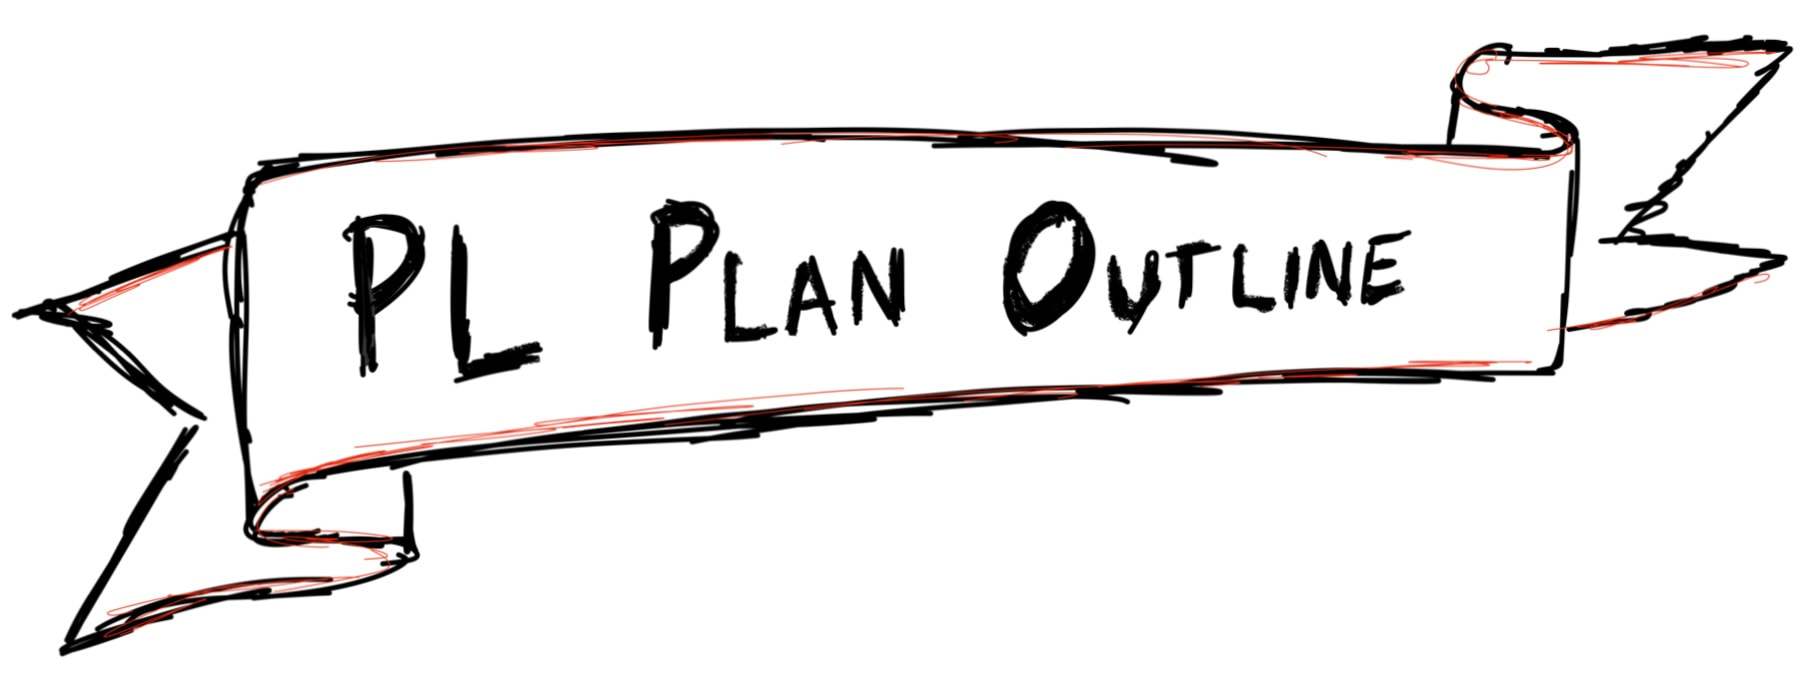 PL Plan Outline banner